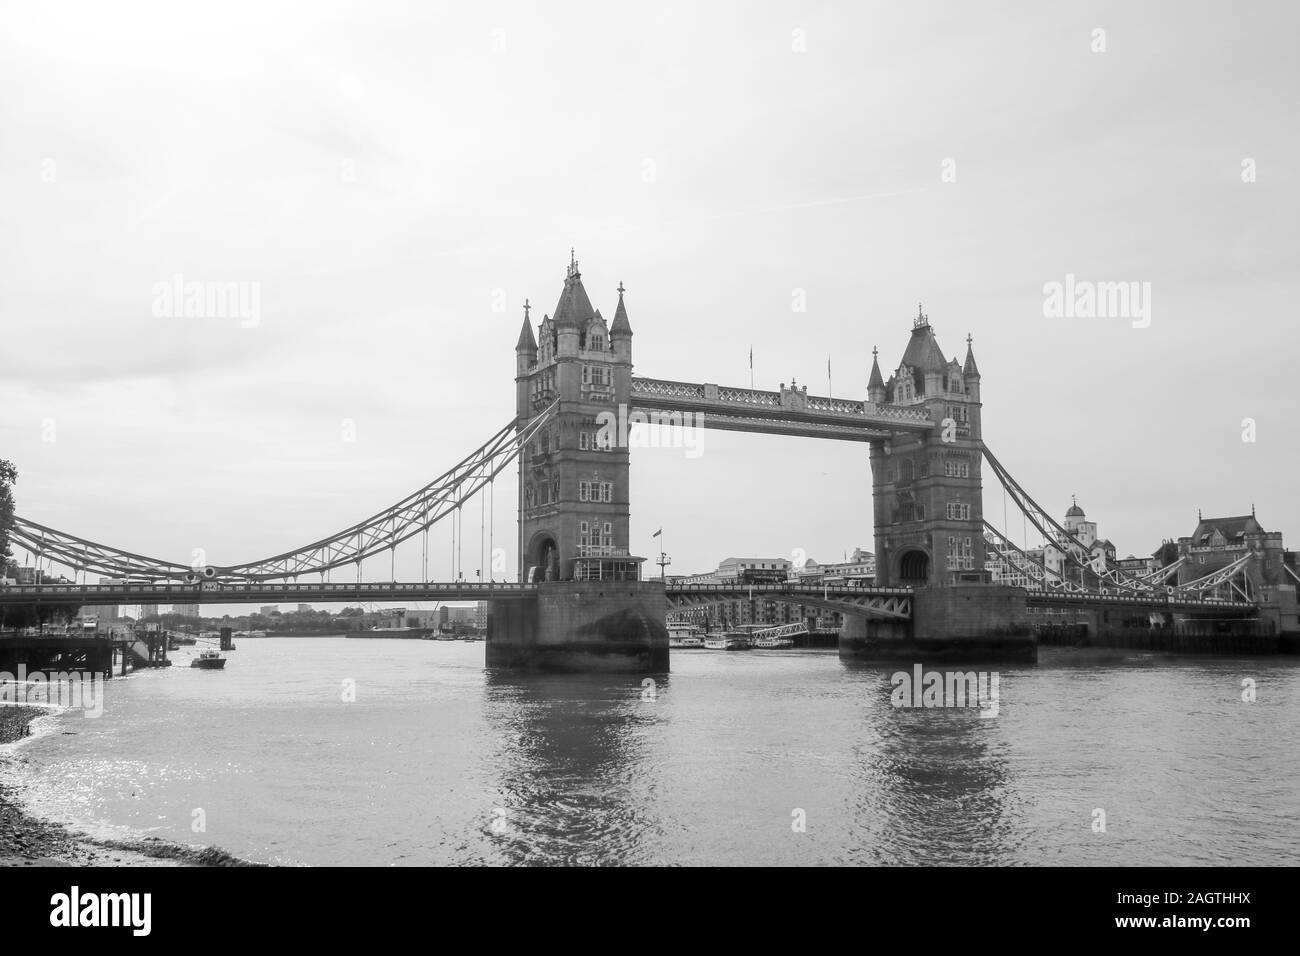 21 août 2019 - Tower Bridge, Londres, Royaume-Uni. Tower Bridge est probablement le plus célèbre pont du monde, debout au-dessus de la rivière Thame Banque D'Images